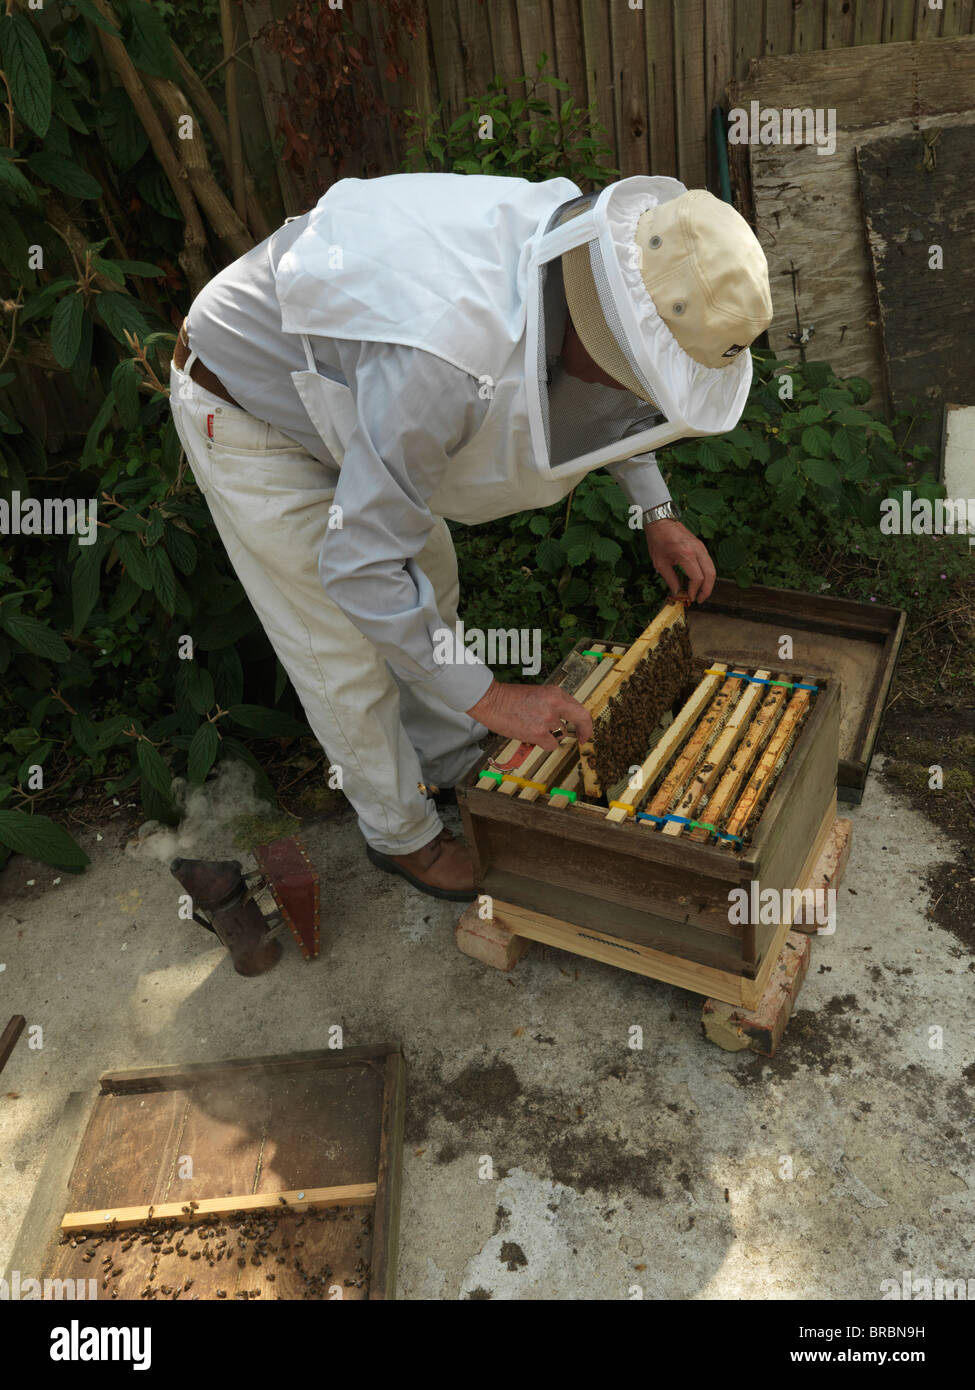 Un apiculteur en portant des vêtements blancs la gestion des cellules prêt à collecter le miel Banque D'Images